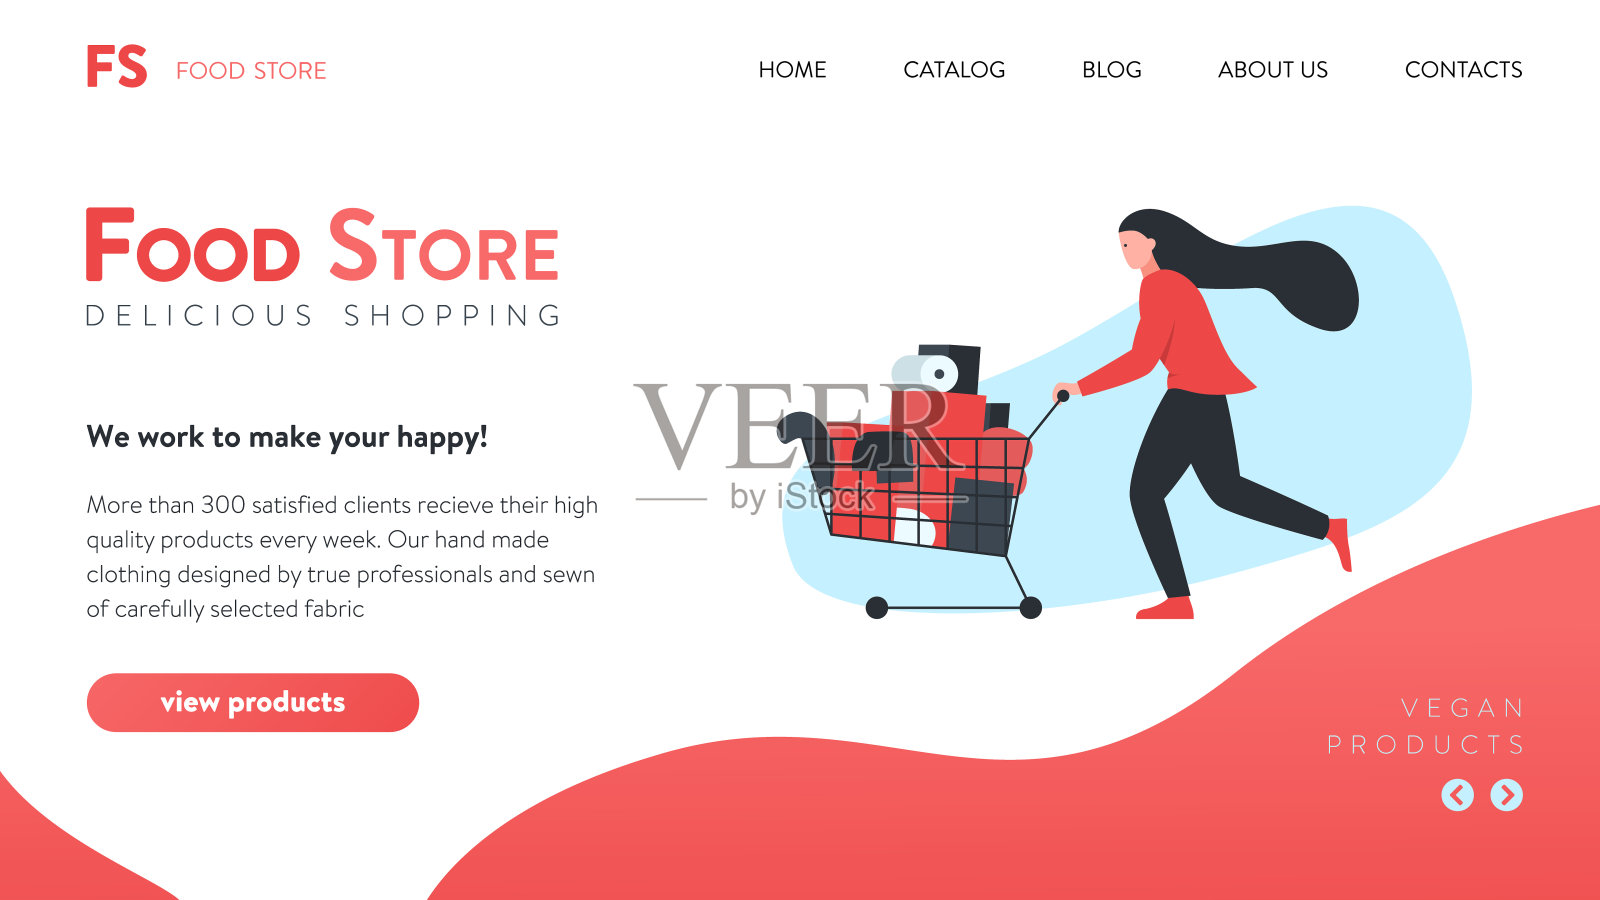 矢量插图的一个在线食品商店网站界面与概念插图的女人运载着一个购物车与货物。它代表了食品购物、在线商店设计或登陆页面的概念设计模板素材